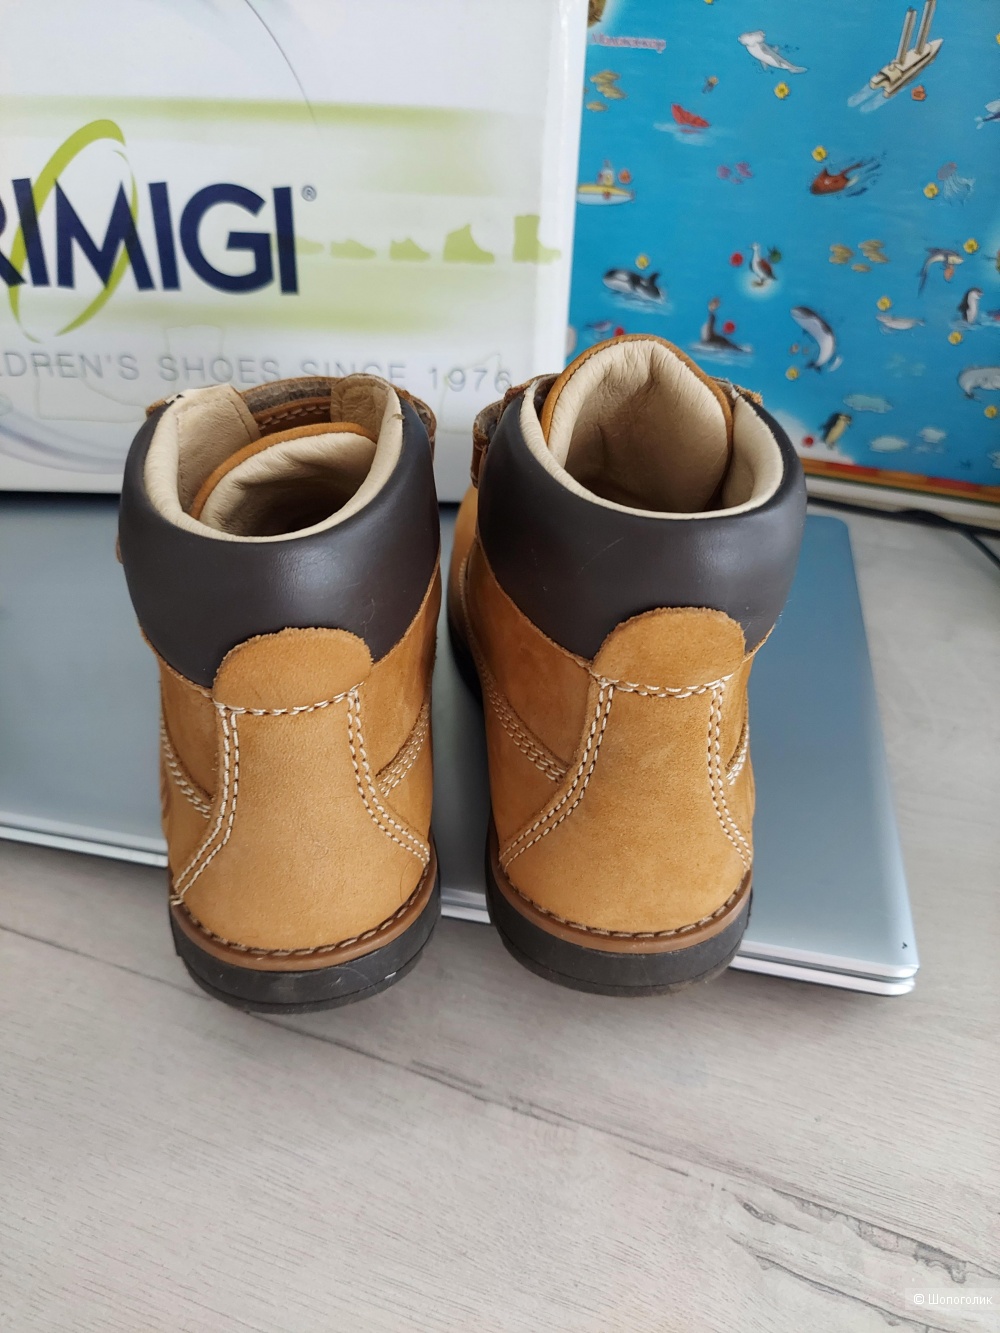 Кожаные ботинки Primigi,  размер 32